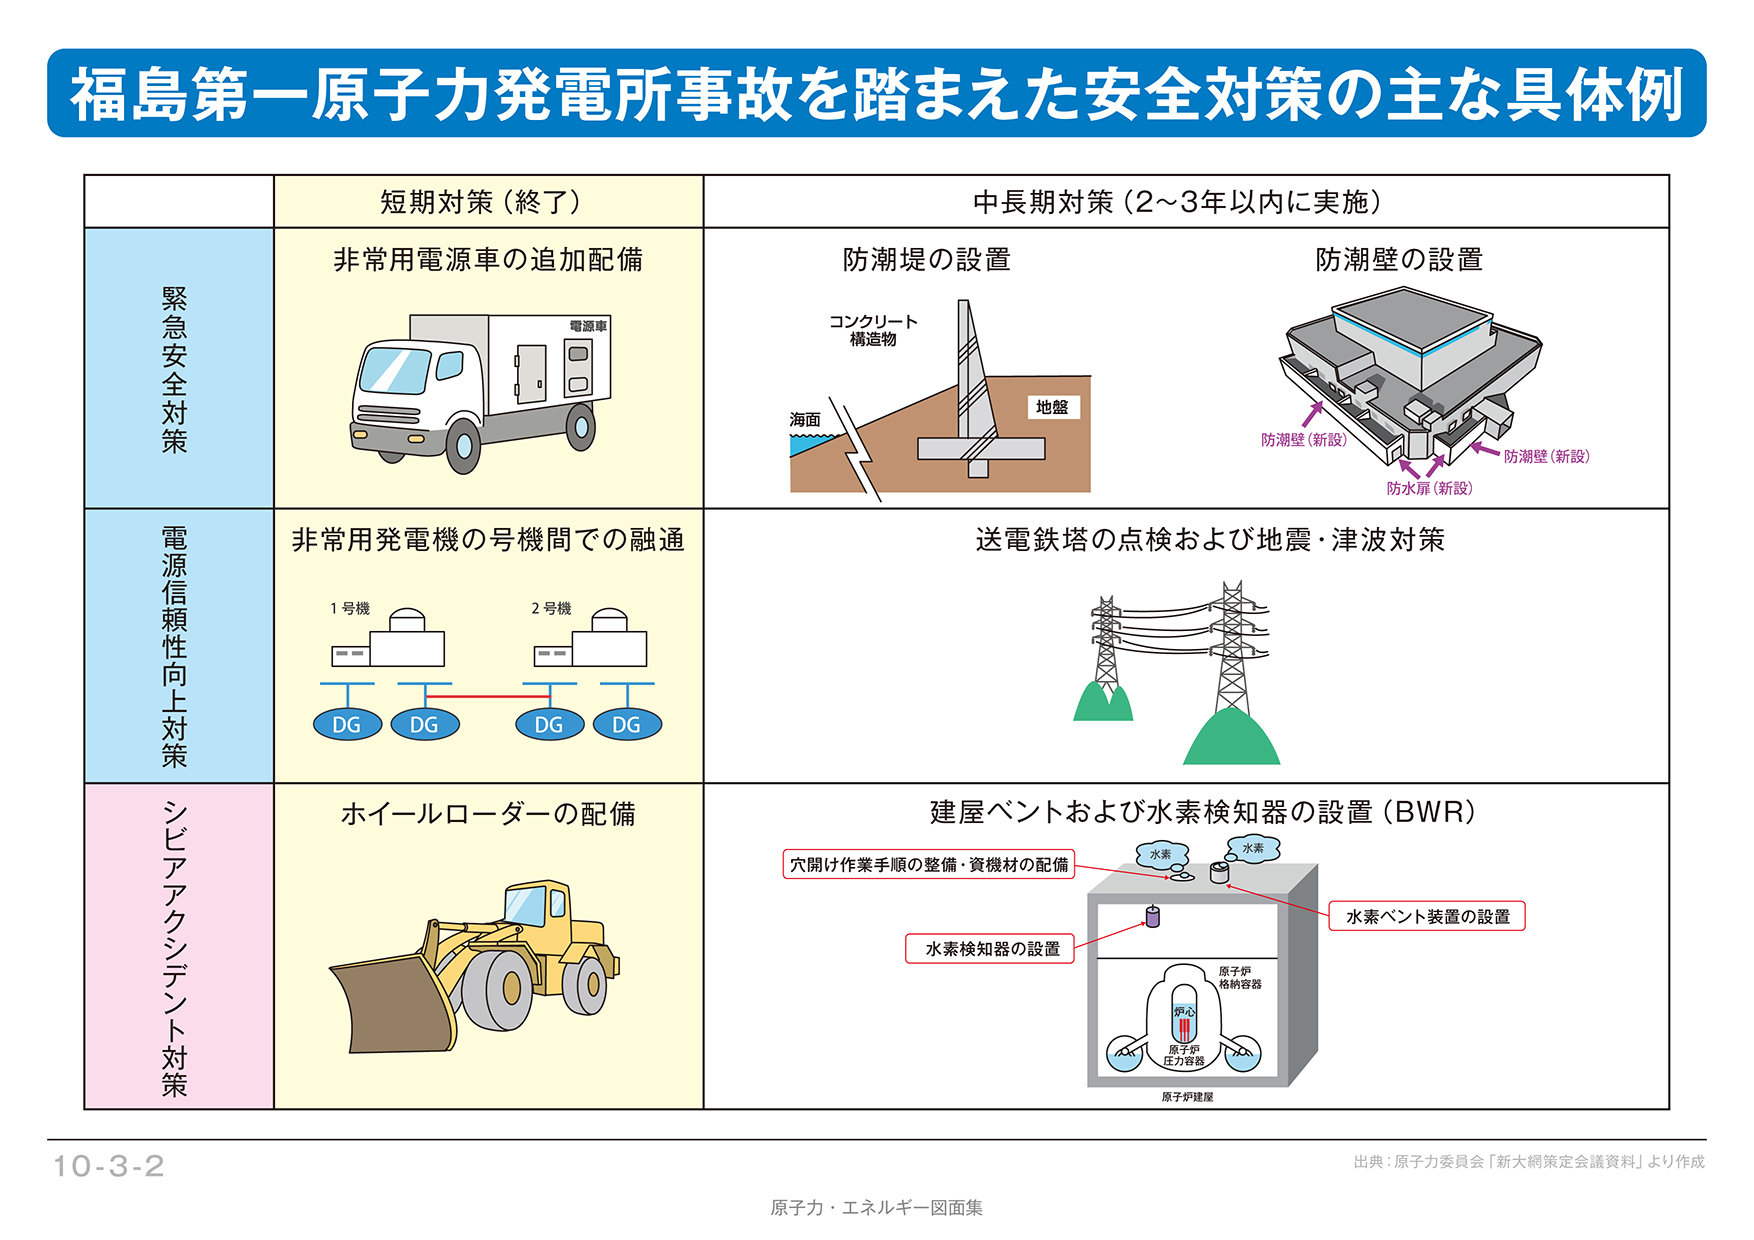 【10-3-02】福島第一原子力発電所事故を踏まえた 安全対策の主な具体例